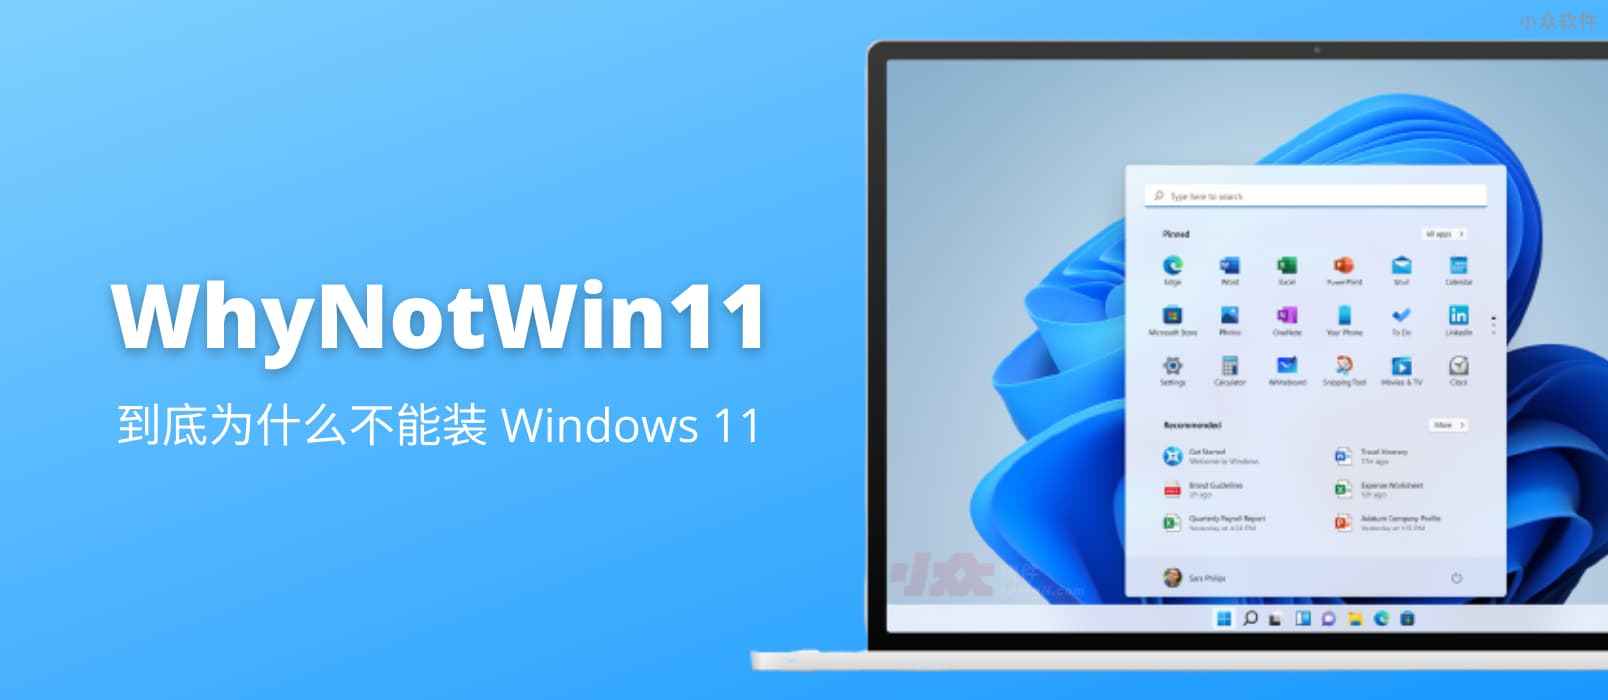 WhyNotWin11 - 到底为什么不能安装 Windows 11？第三方检测工具告诉你还缺什么